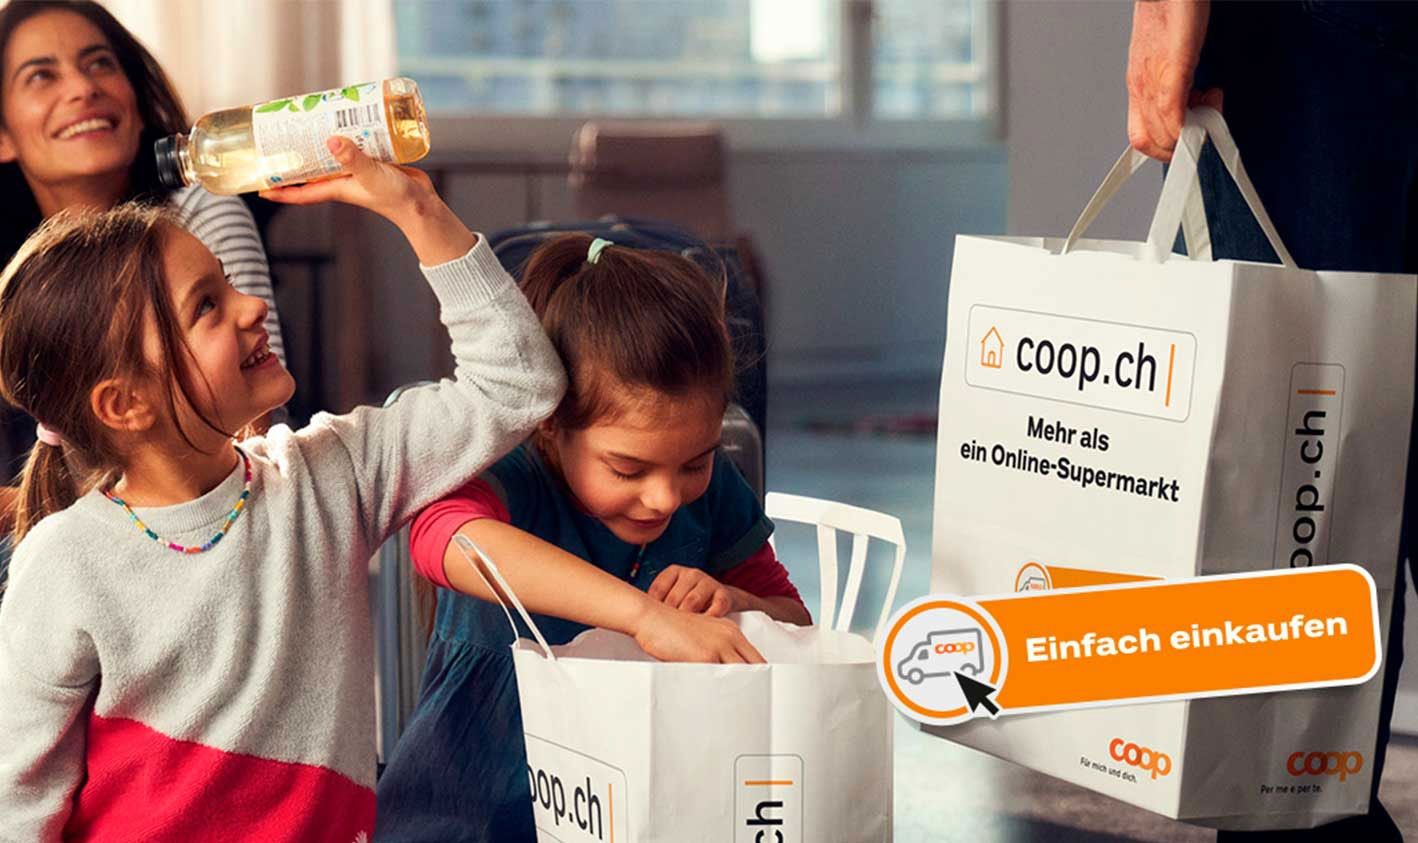 coop.ch Online-Supermarkt / Bild: coop.ch